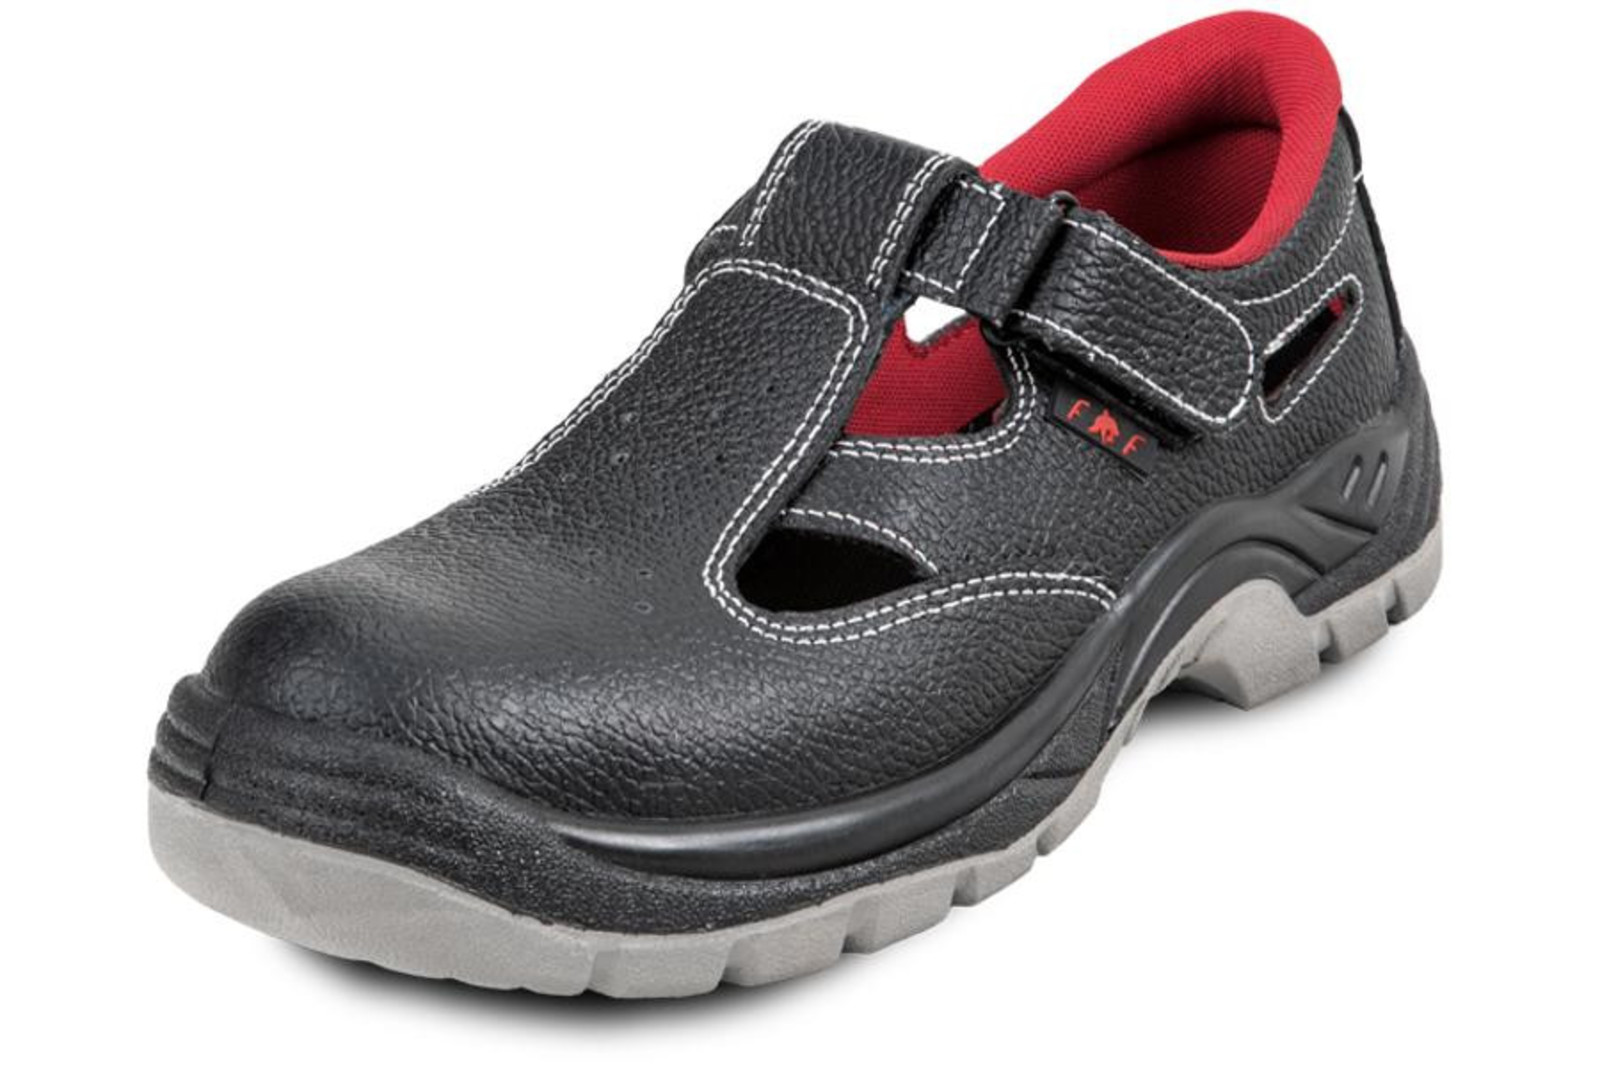 Pracovné sandále Bonn SC 01-002 O1 - veľkosť: 37, farba: čierna